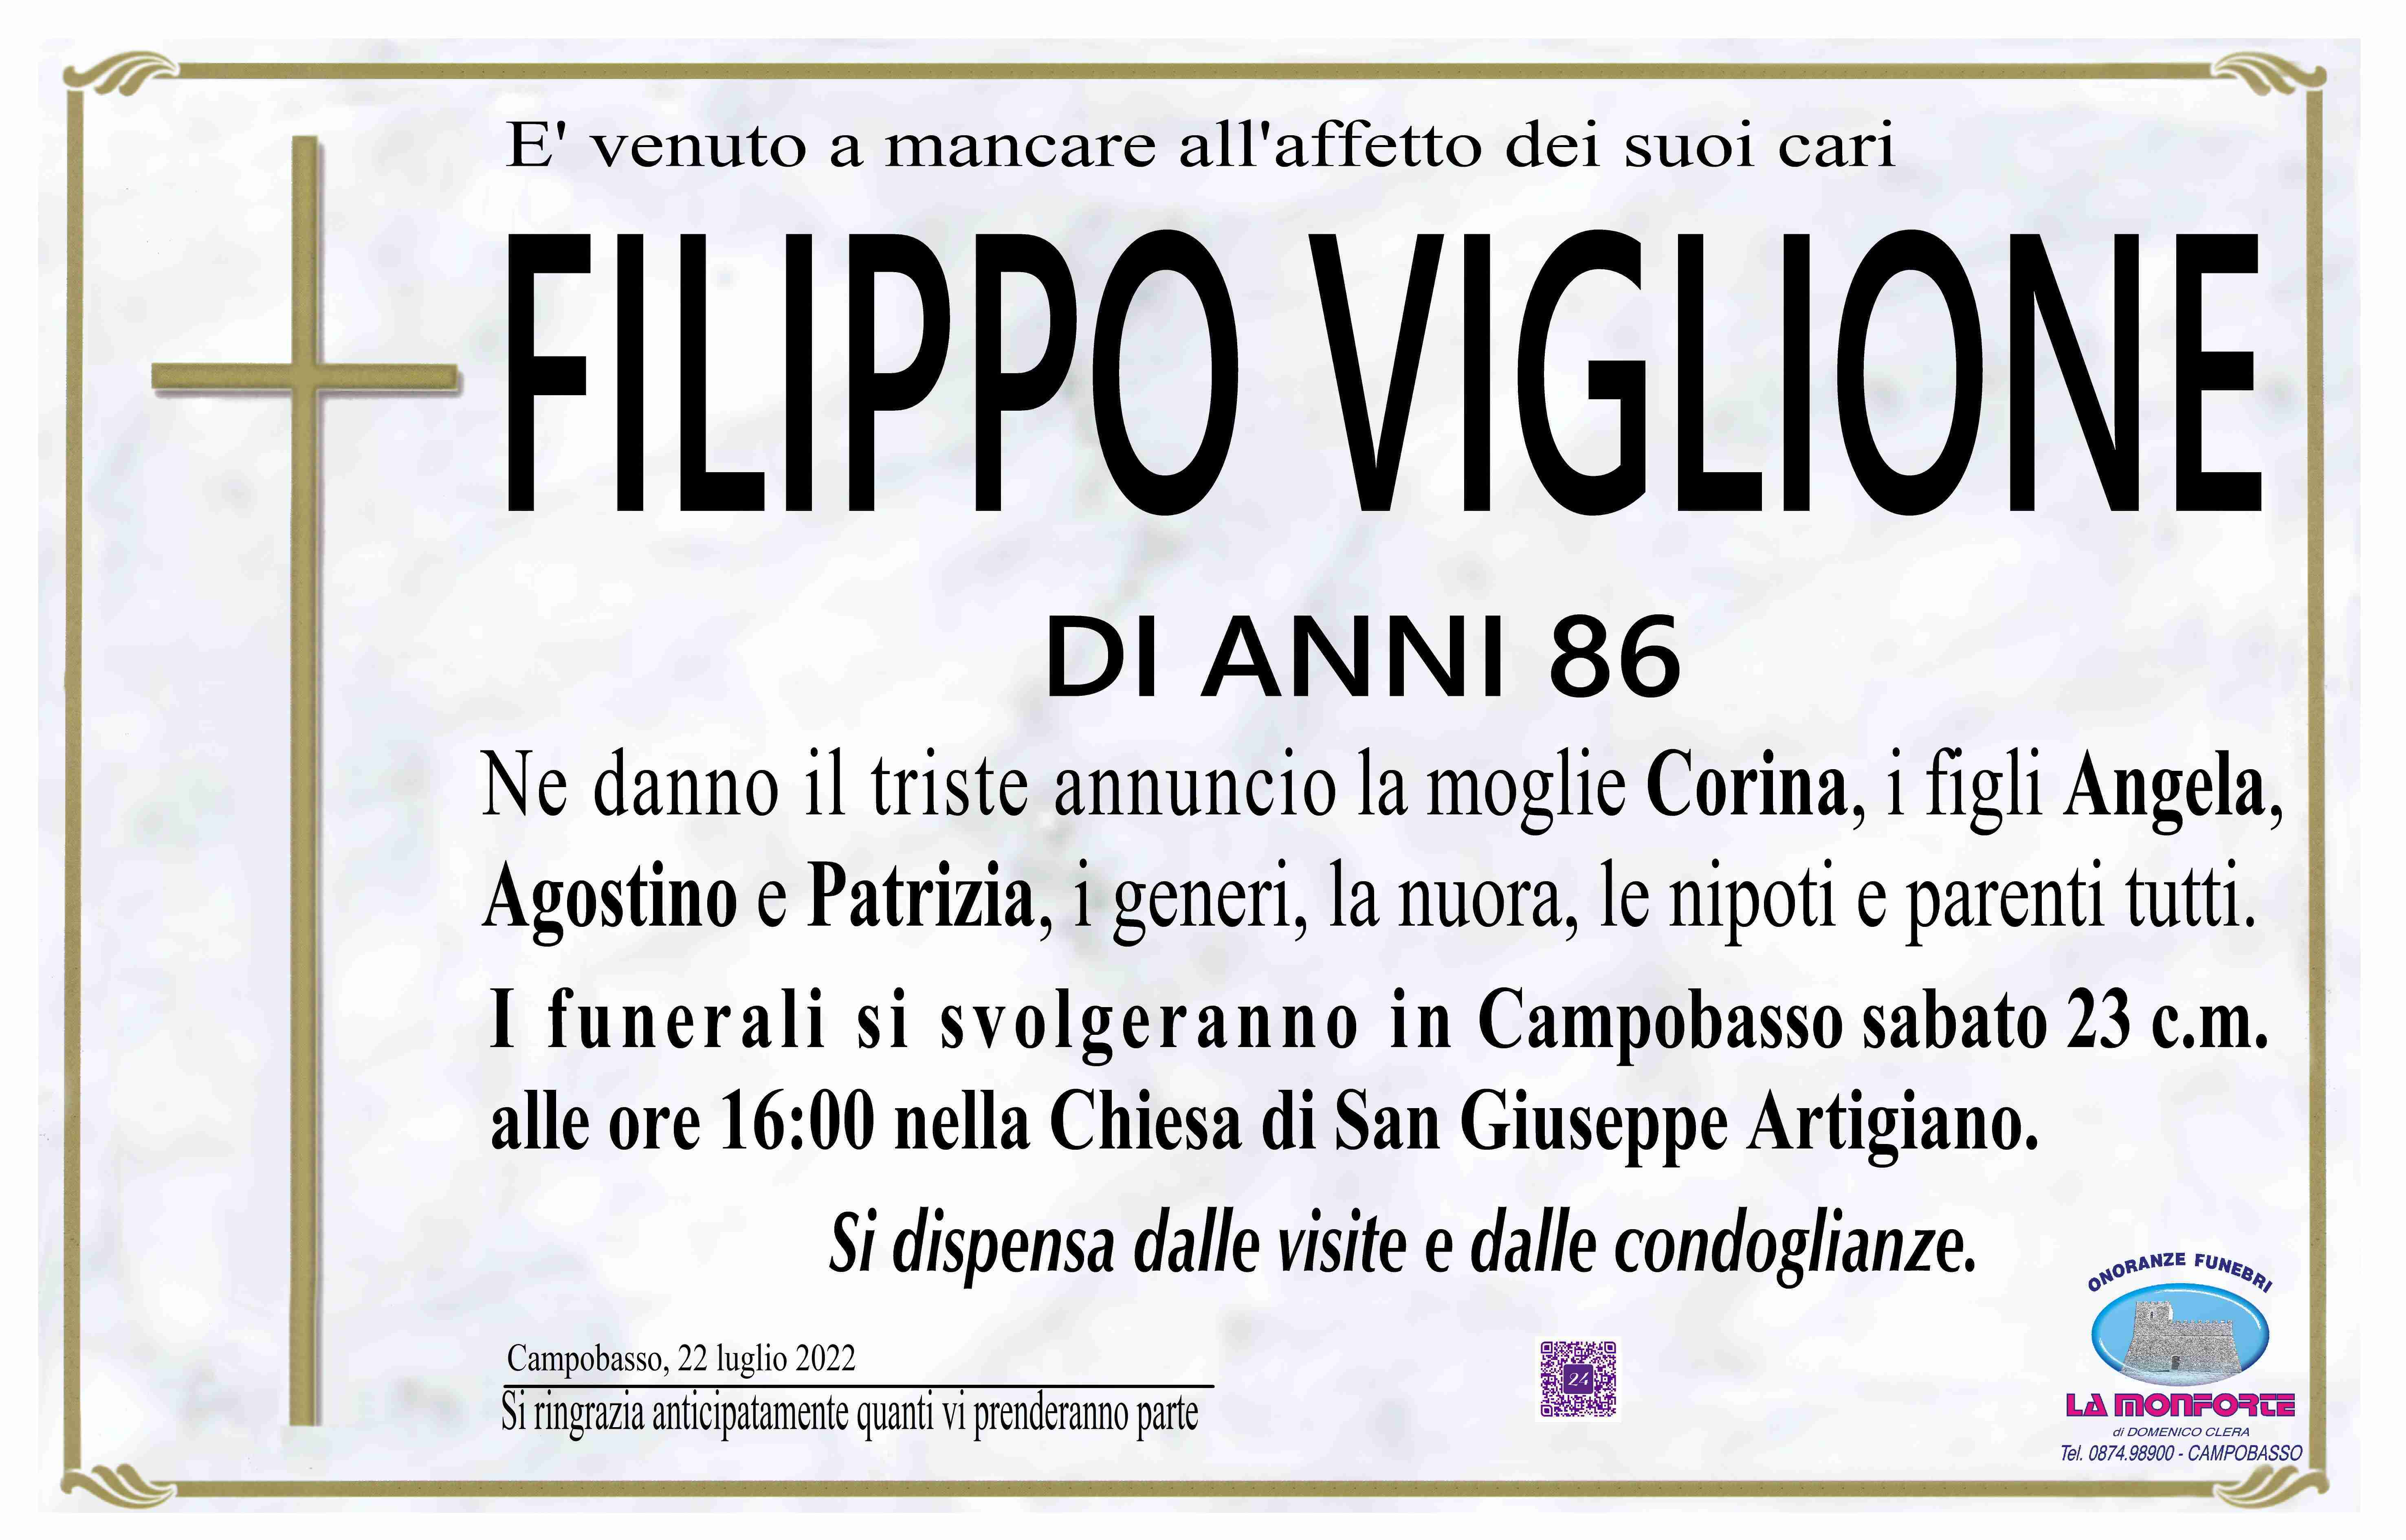 Filippo Viglione